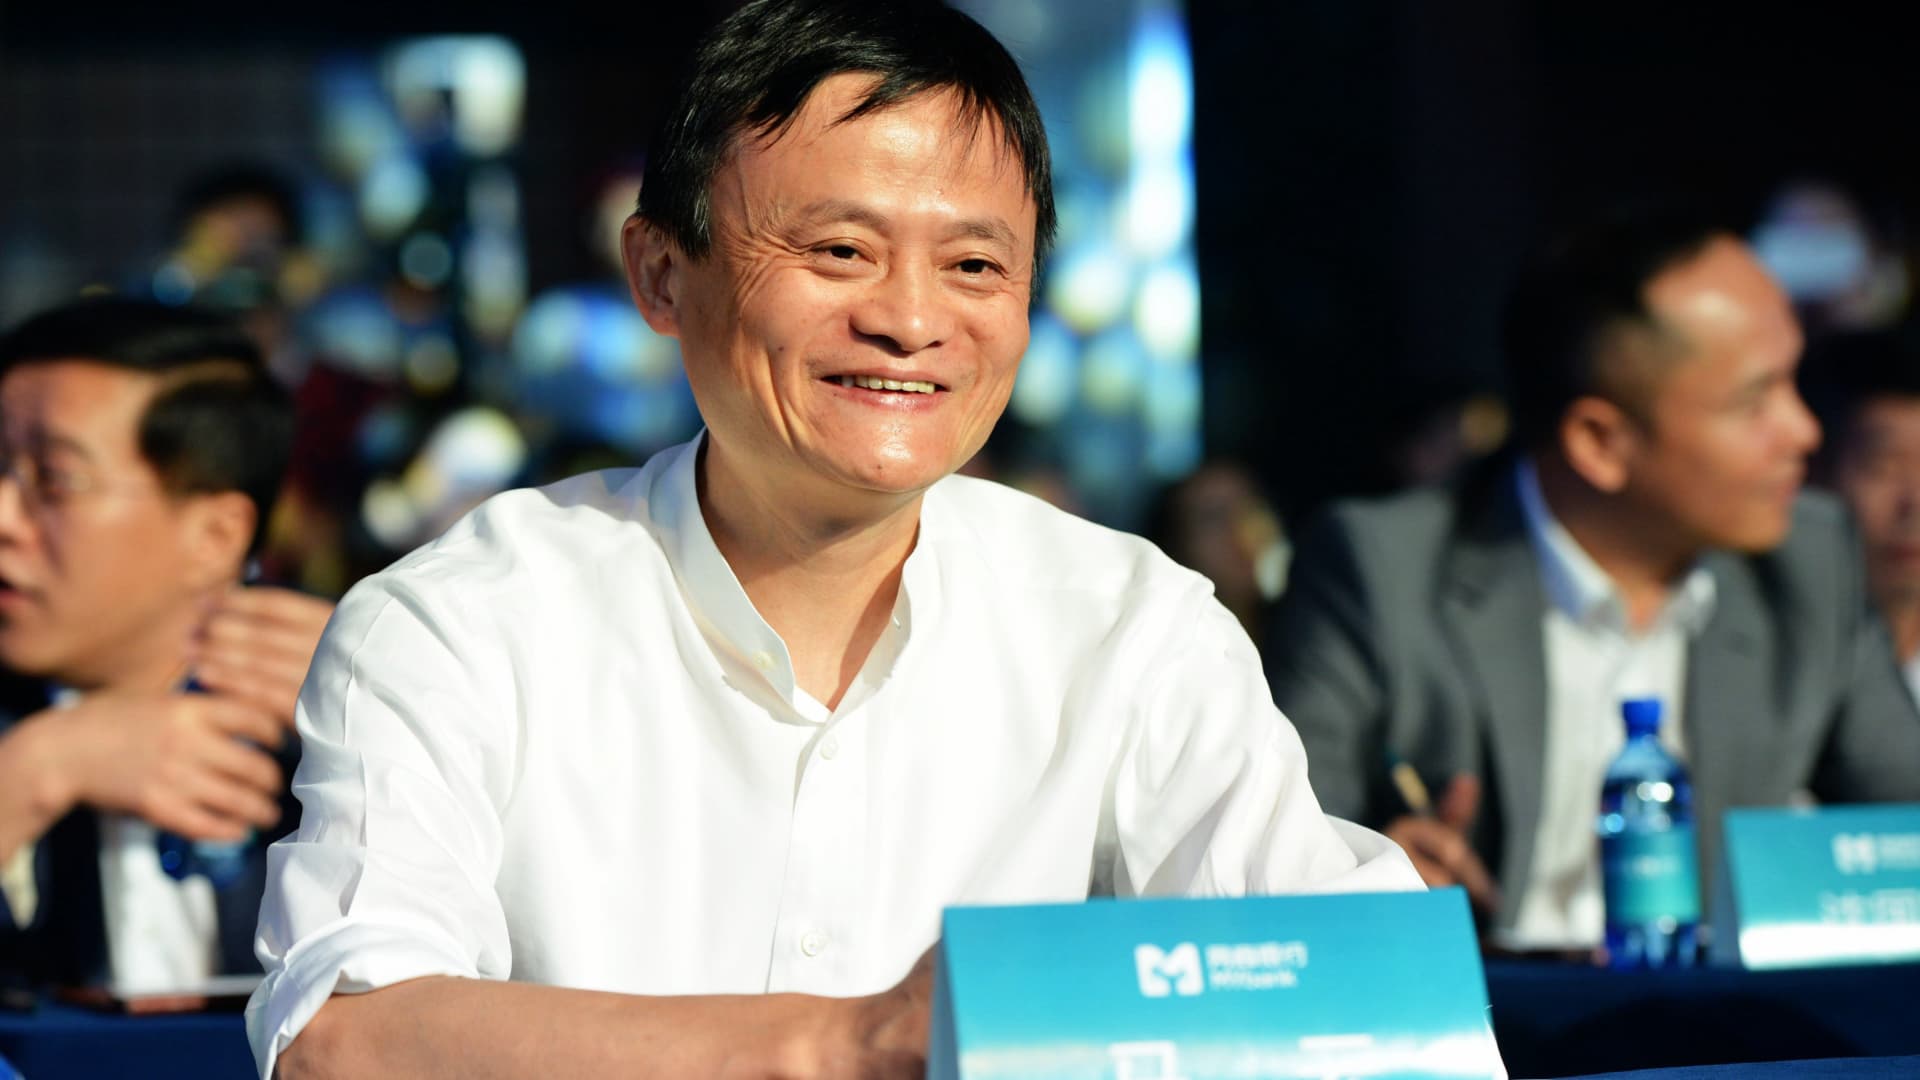 Le fondateur d’Alibaba, Jack Ma, de retour en Chine après des mois passés à l’étranger